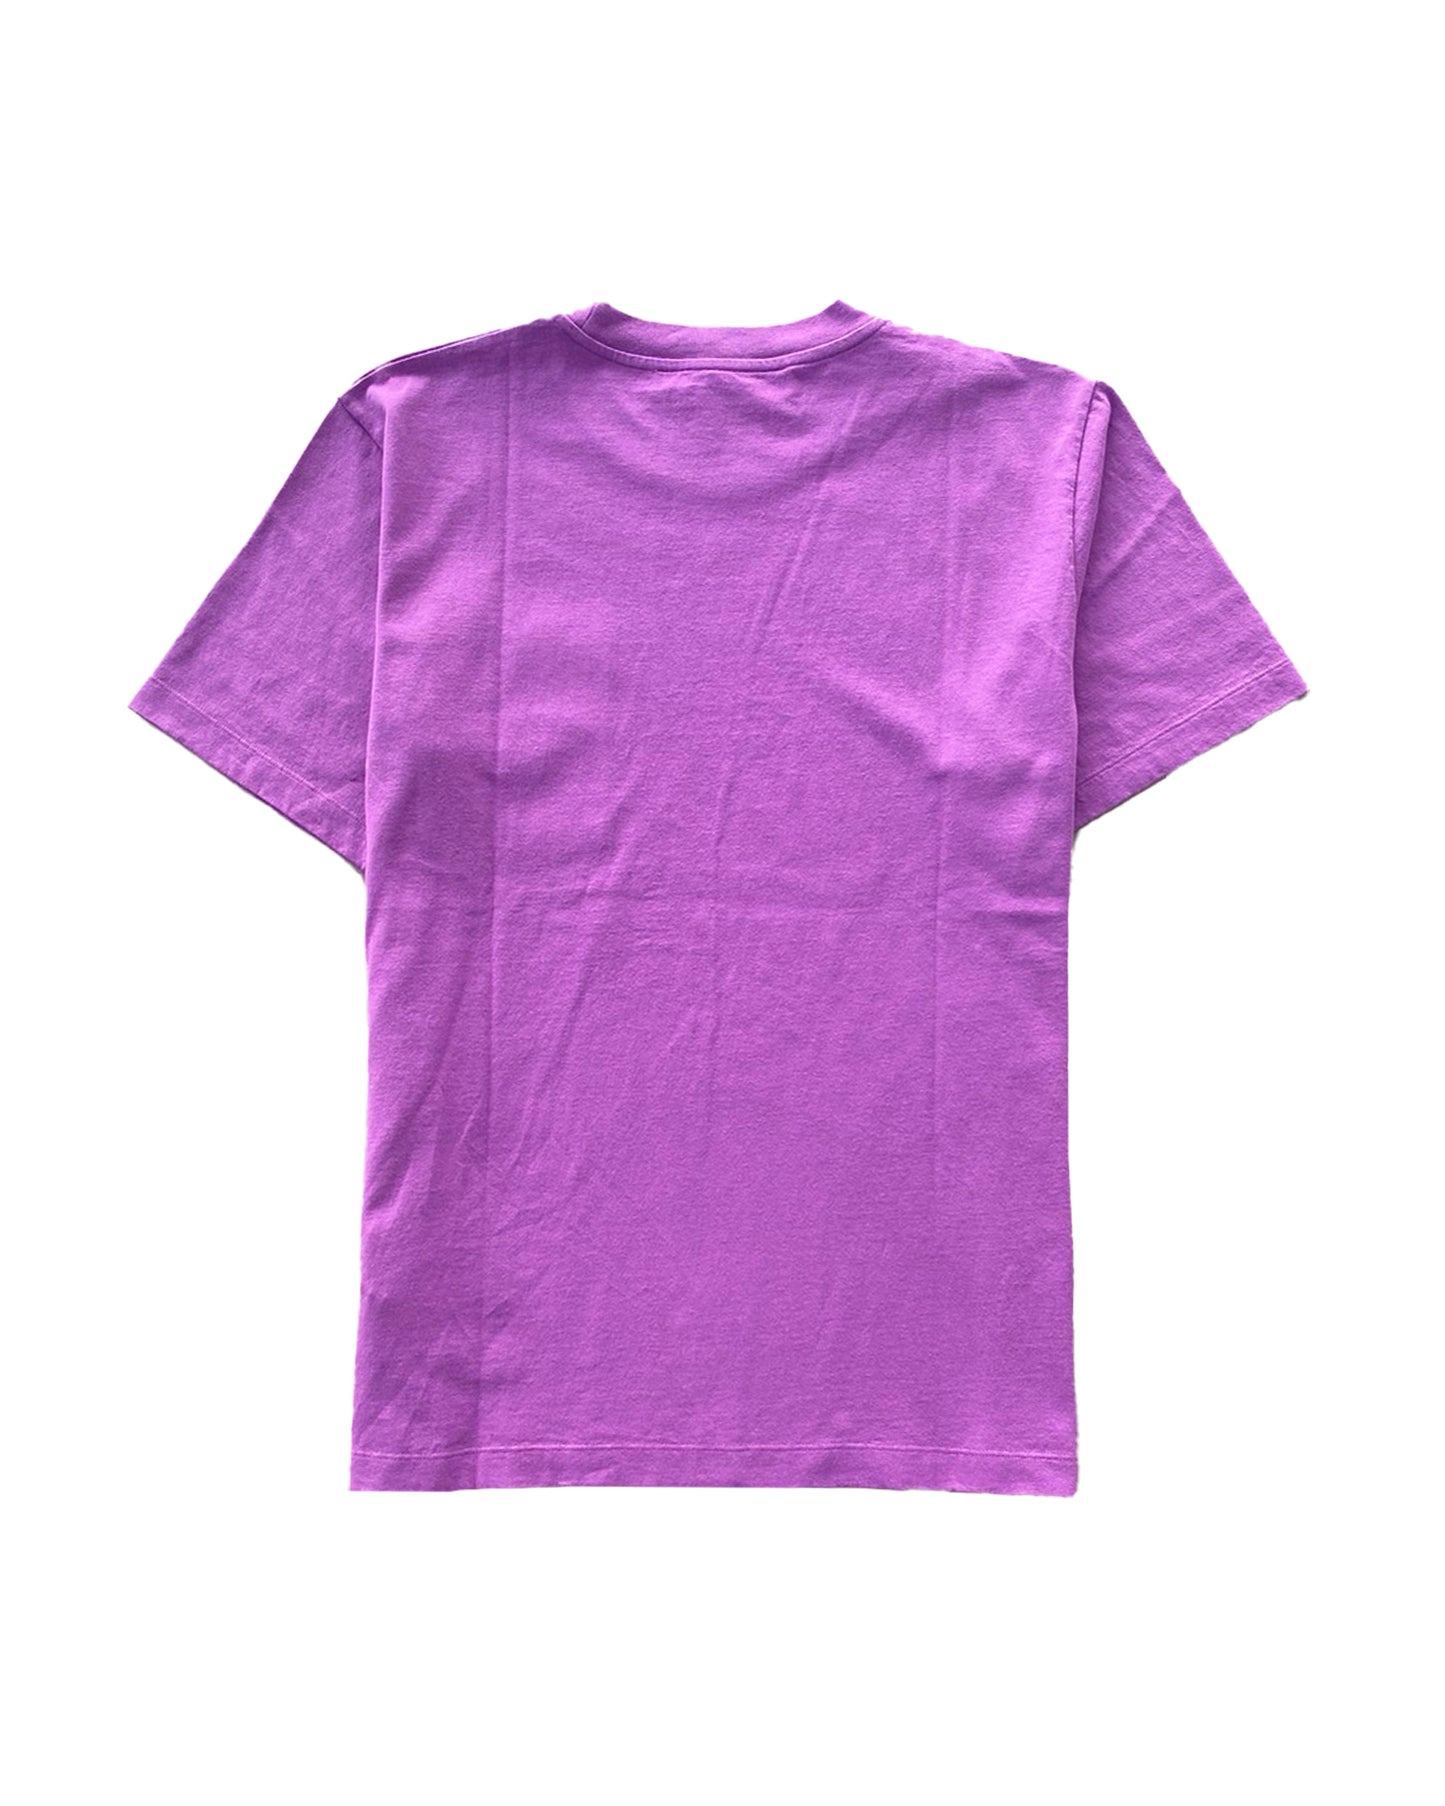 オフホワイト/Diag pkt slim s/s tee/Tシャツ/Purple